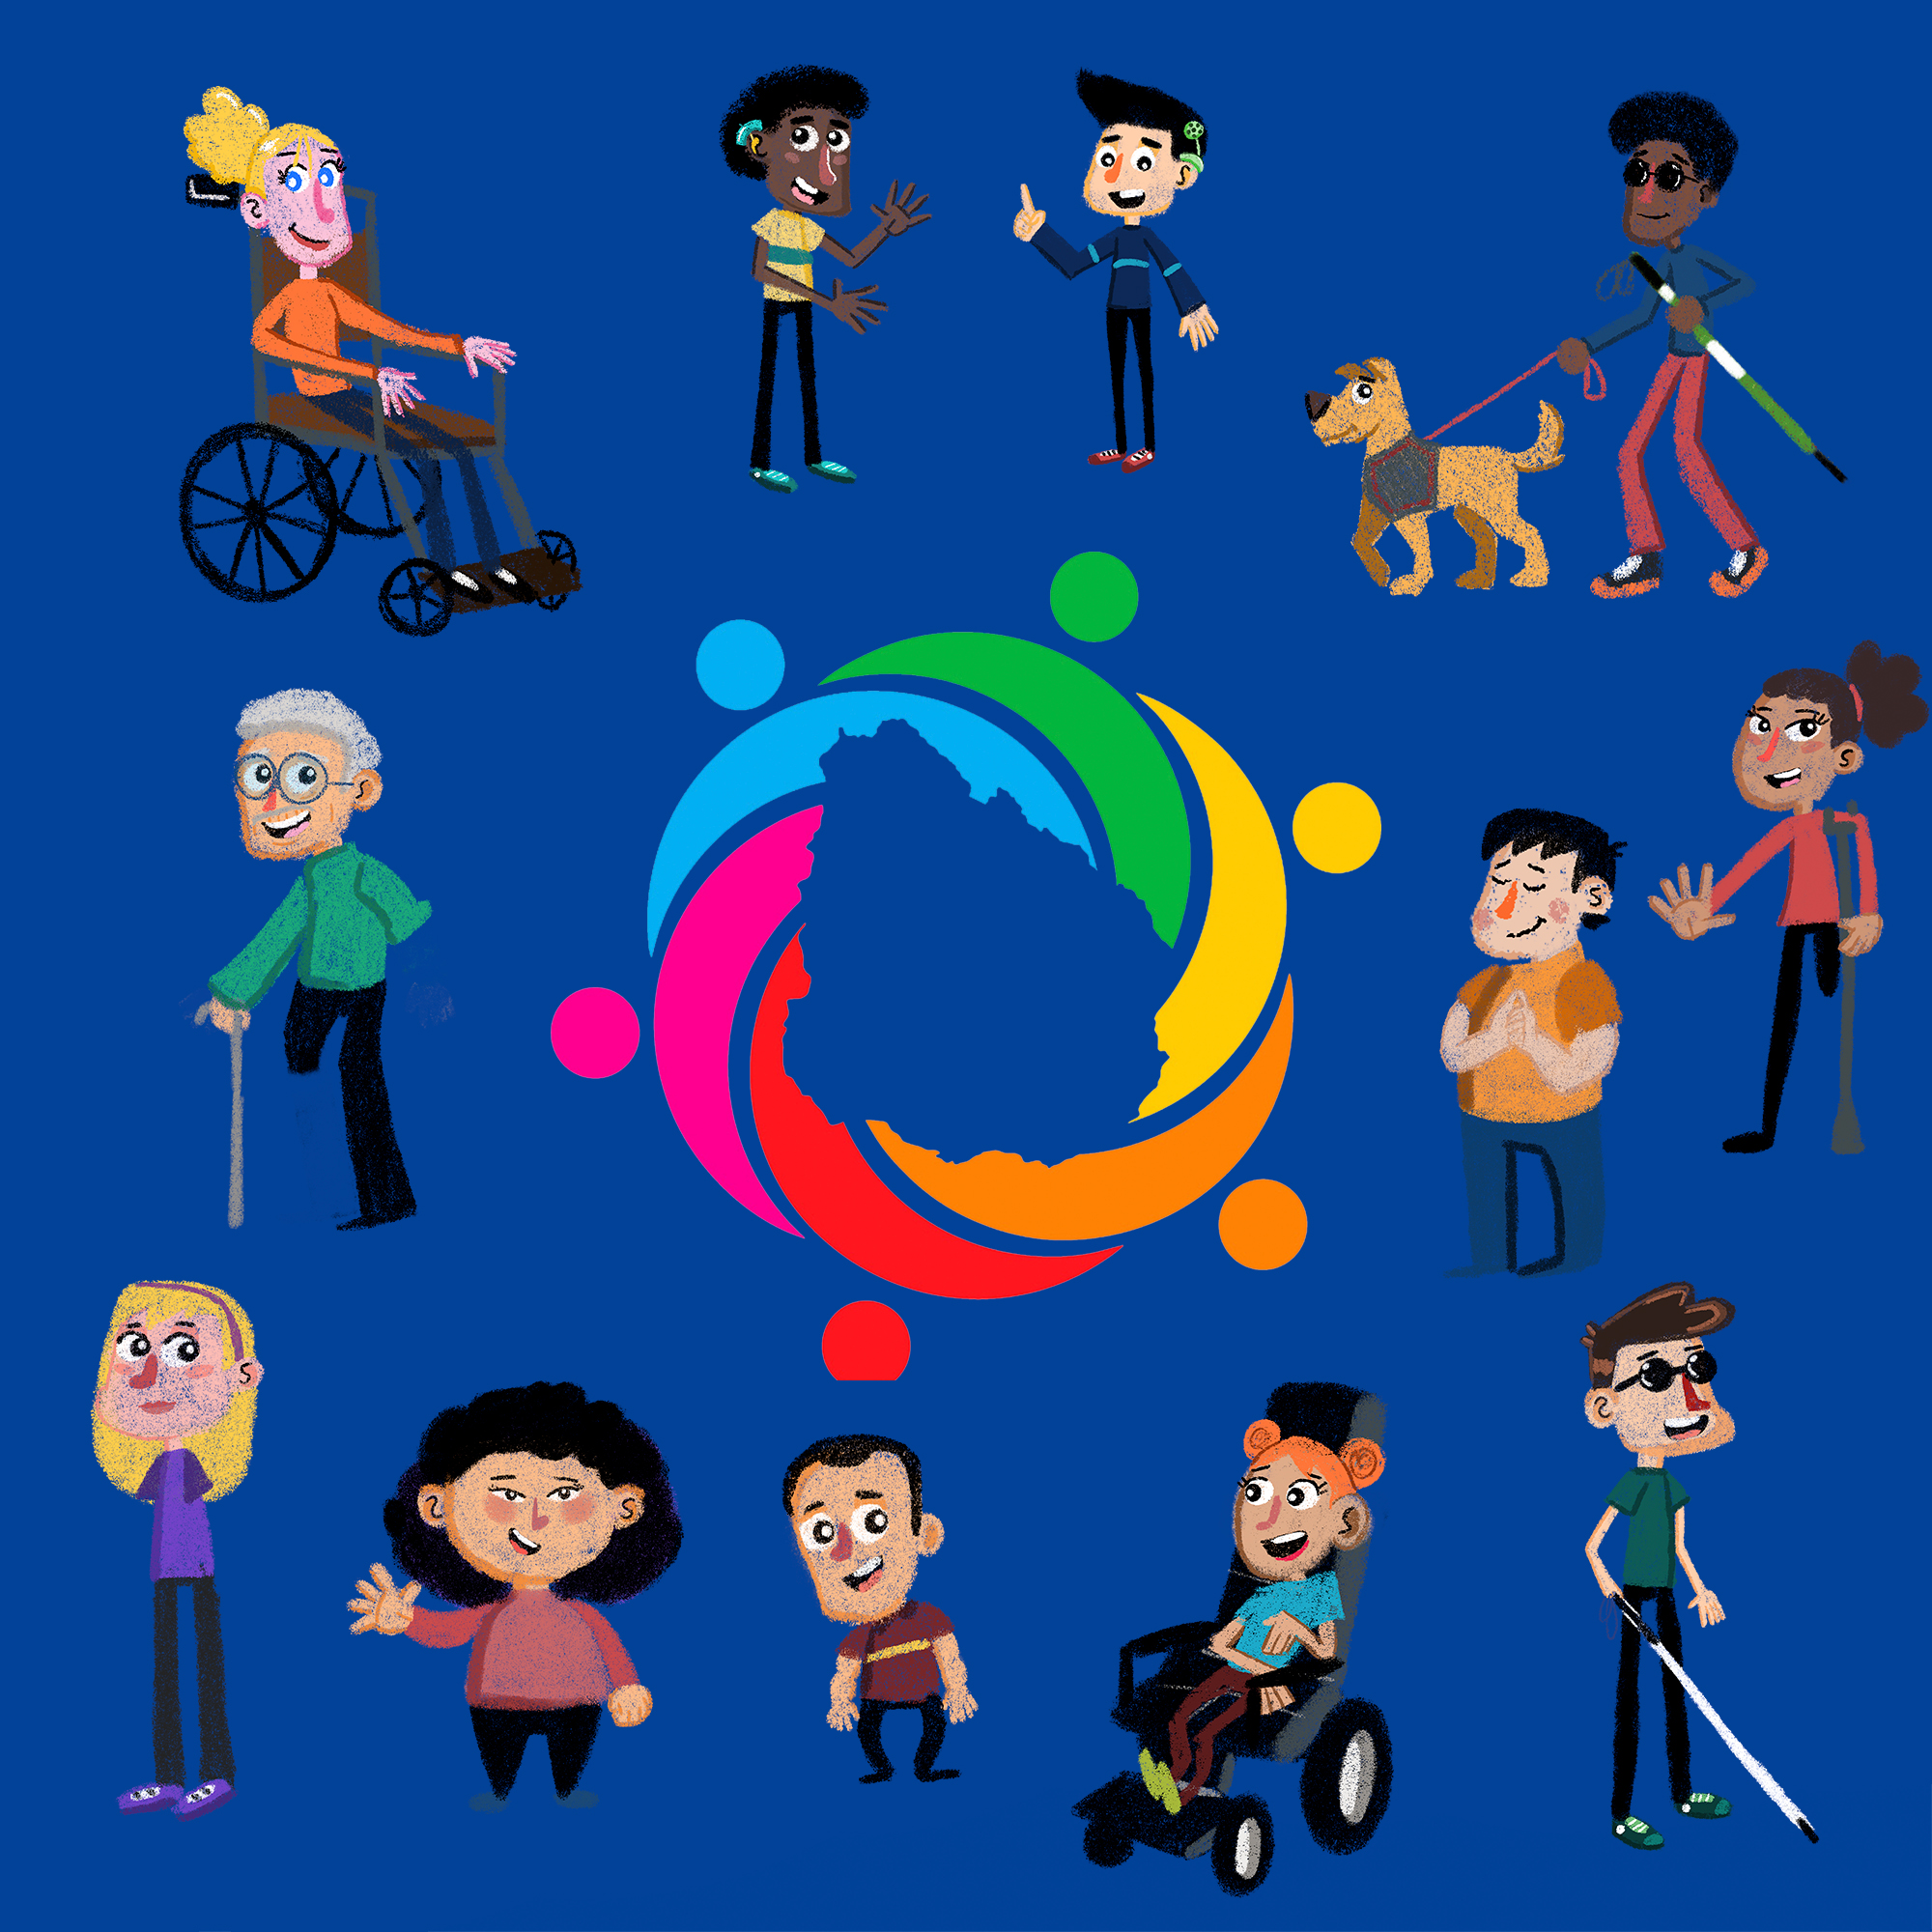 Consejo Asesor Honorario de la sociedad civil organizada de y para personas en situación de discapacidad 